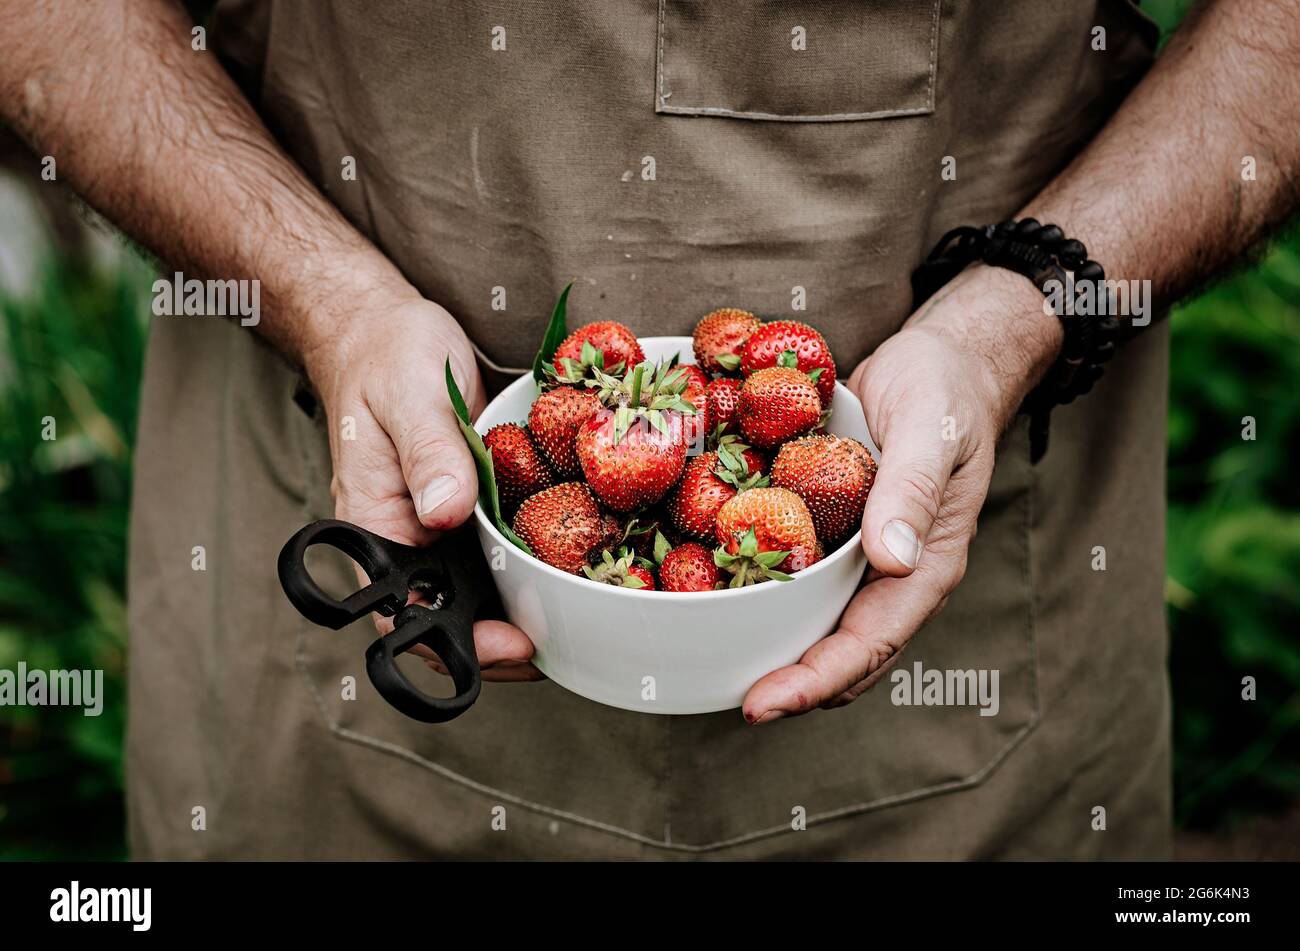 Männliche Hände halten eine weiße Schüssel mit frischen, saftigen Erdbeeren. Der Bauer erntet Erdbeeren. Ernte frischer, saisonaler Bio-Beerenobst. Hu Stockfoto